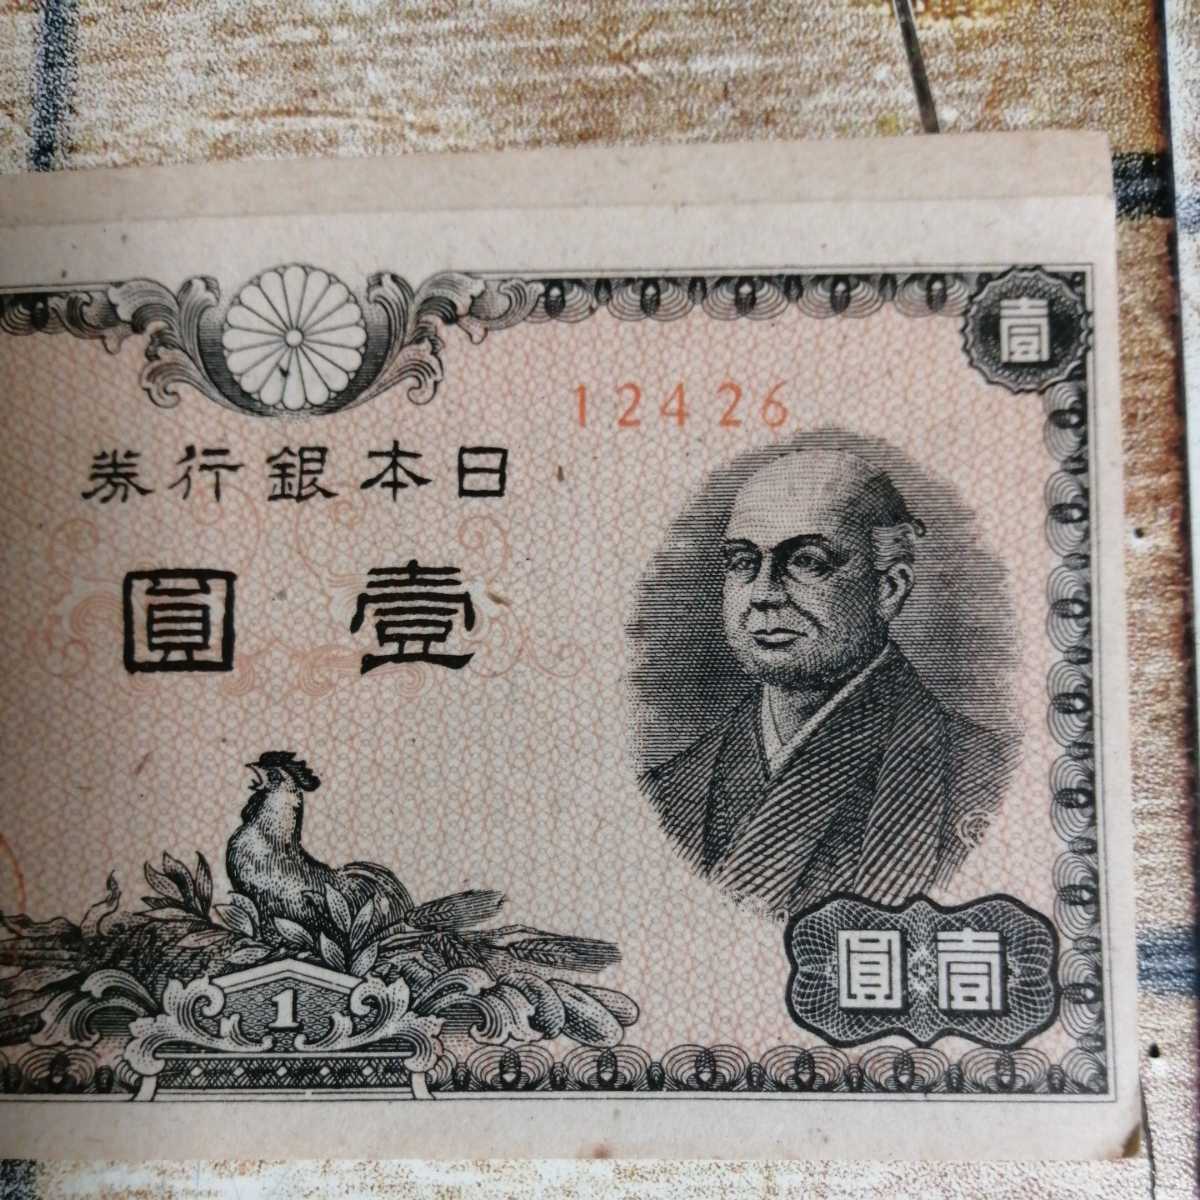 ヤフオク 日本銀行券 1円札 二宮尊徳 壹圓 紙幣 エラー サ